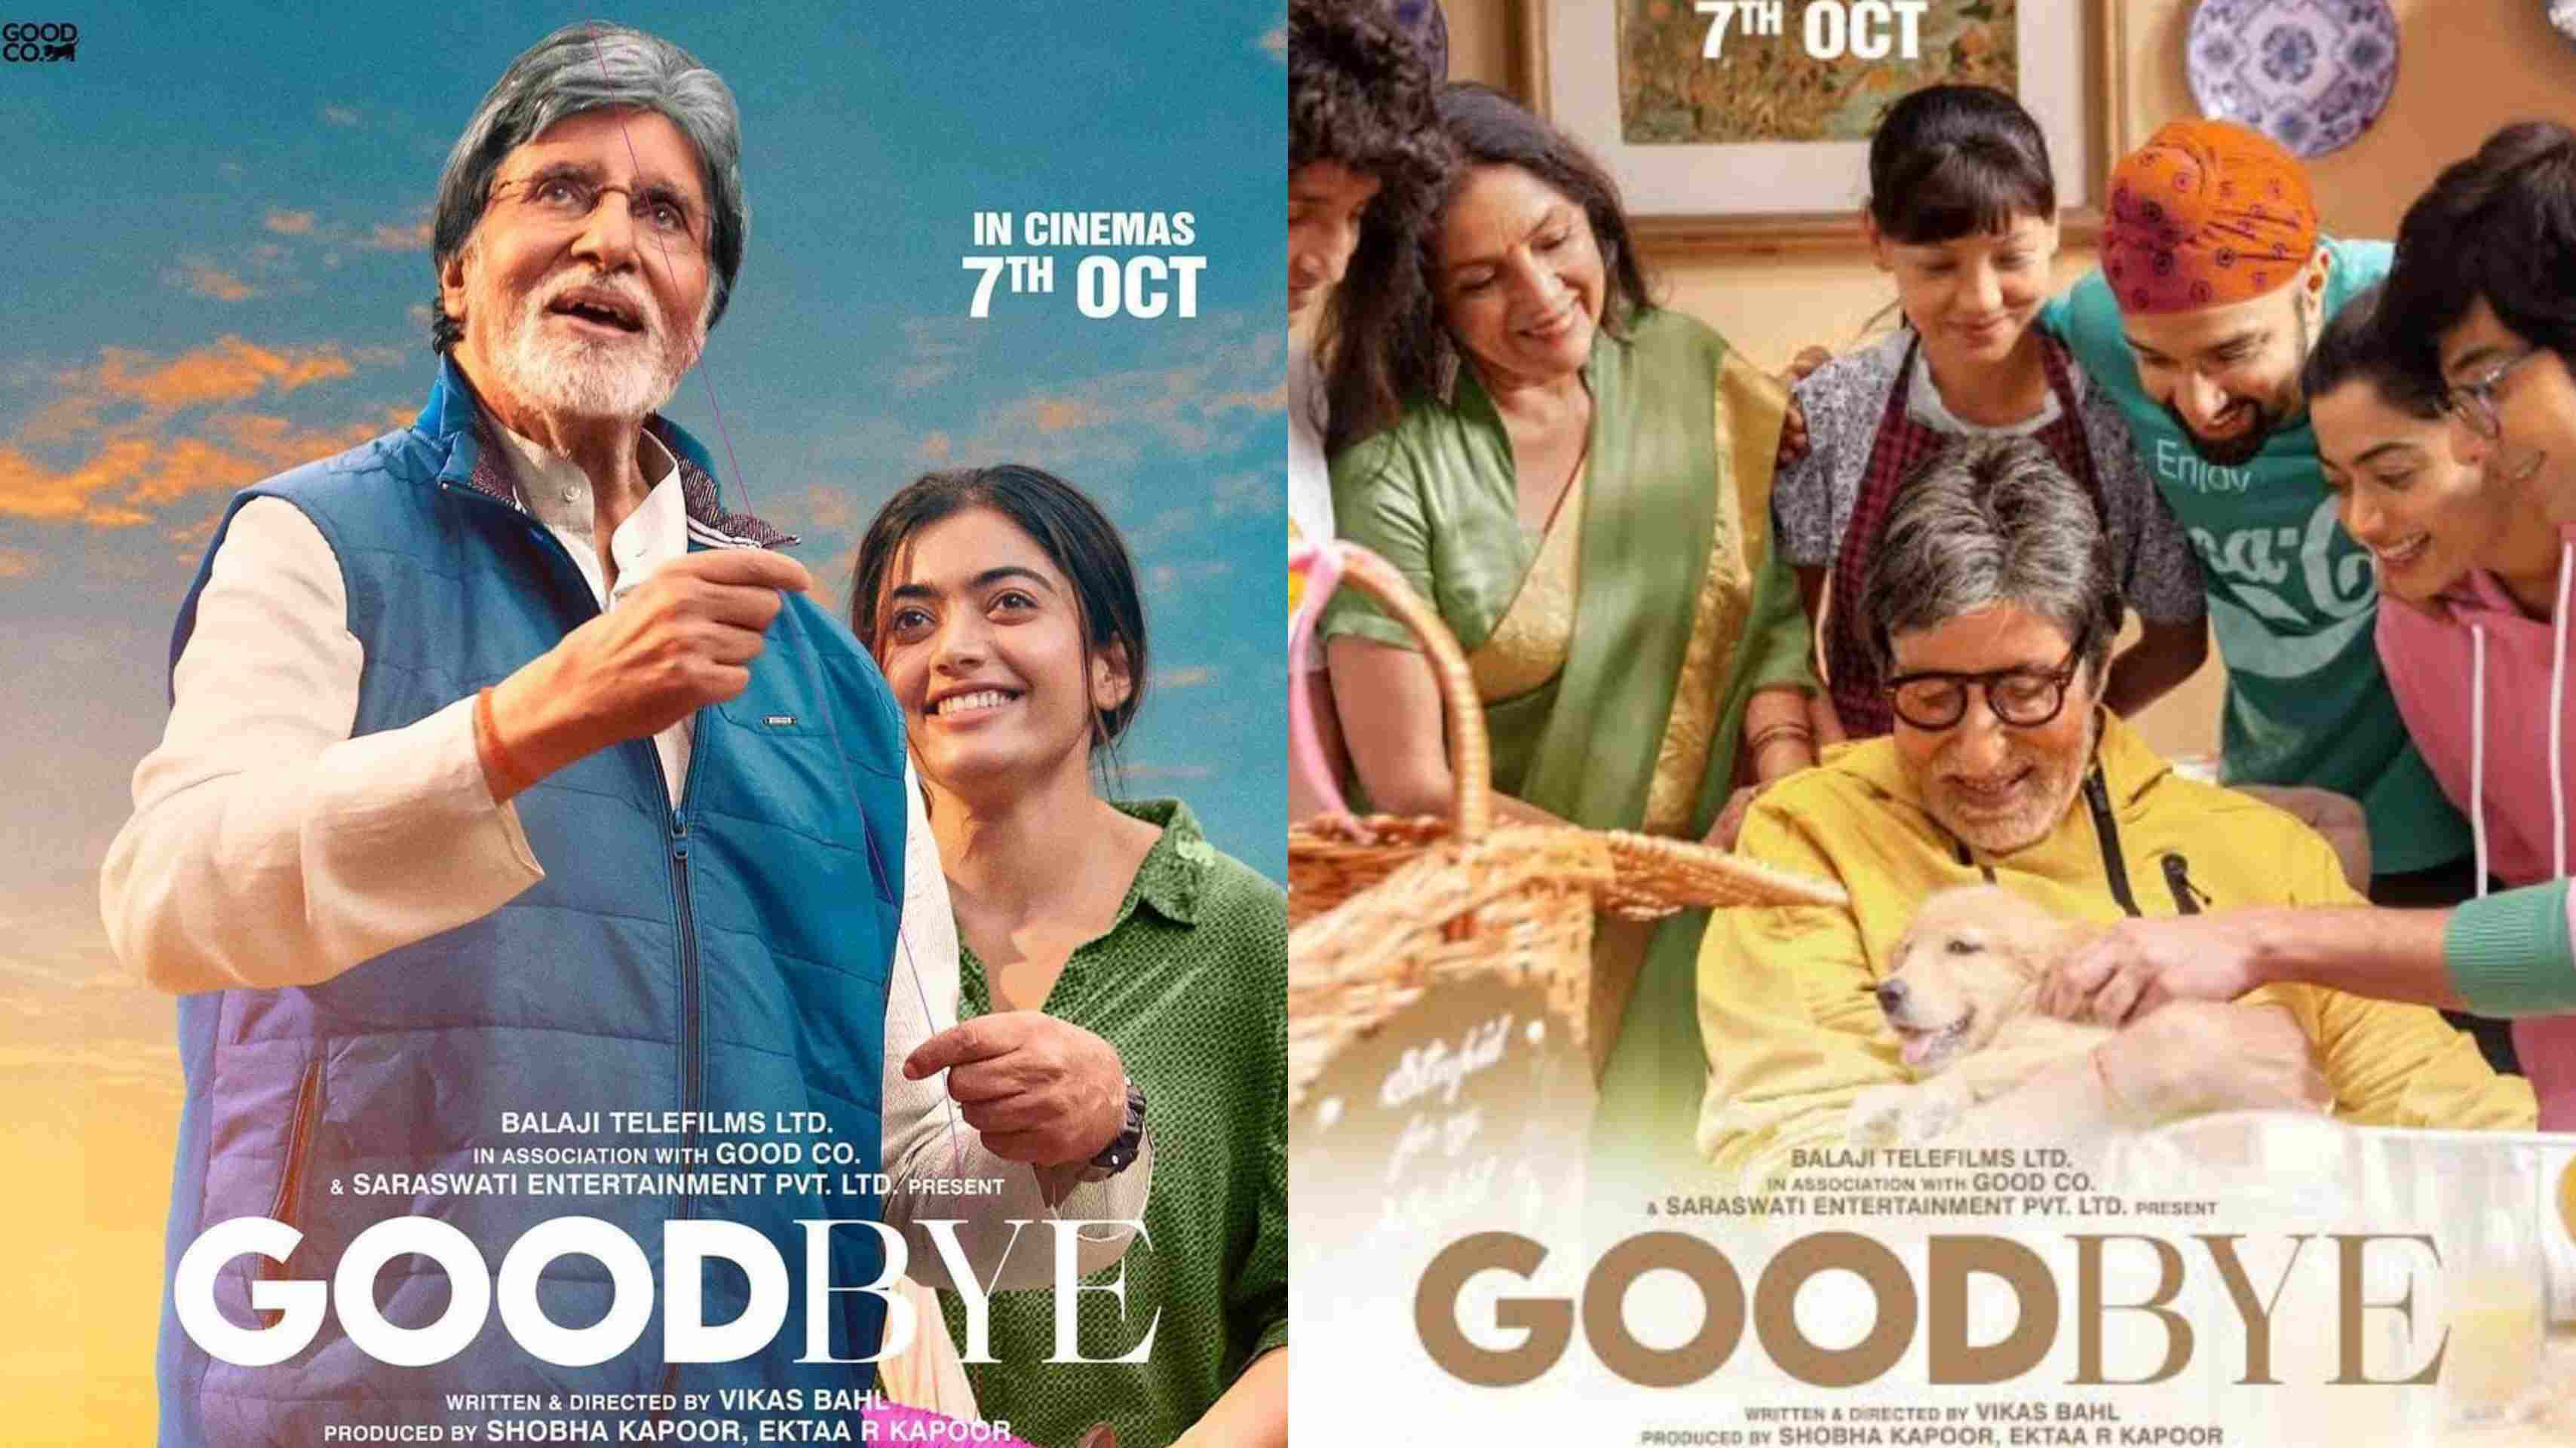 अमिताभ बच्चन की फिल्म गुड बाय को मिले पॉजिटिव रिव्यू, जानें फिल्म ने की कितनी कमाई